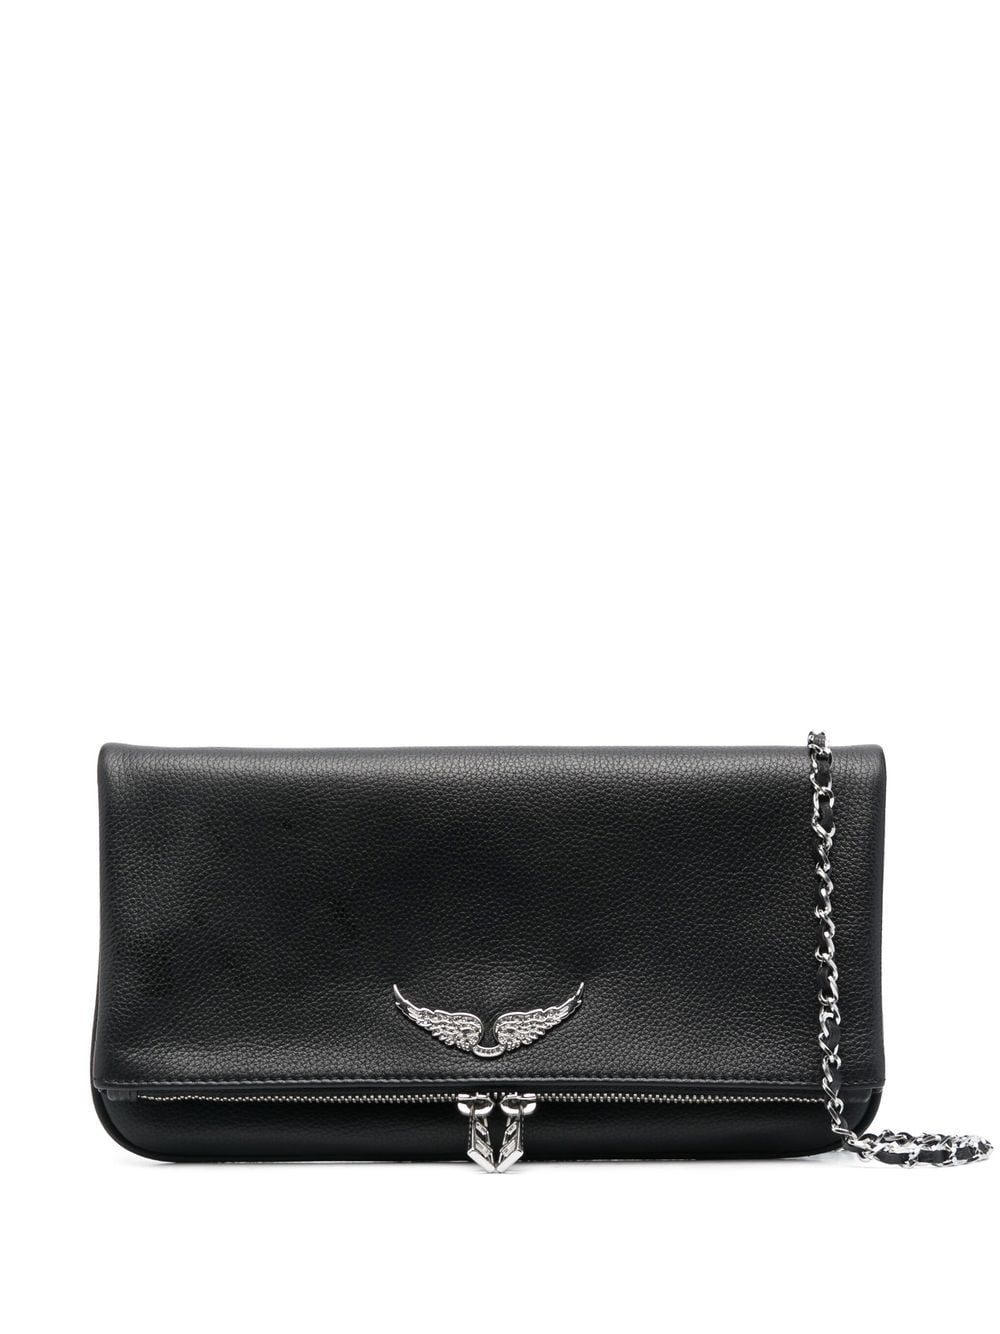 Zadig&Voltaire logo-plaque leather shoulder bag - Black